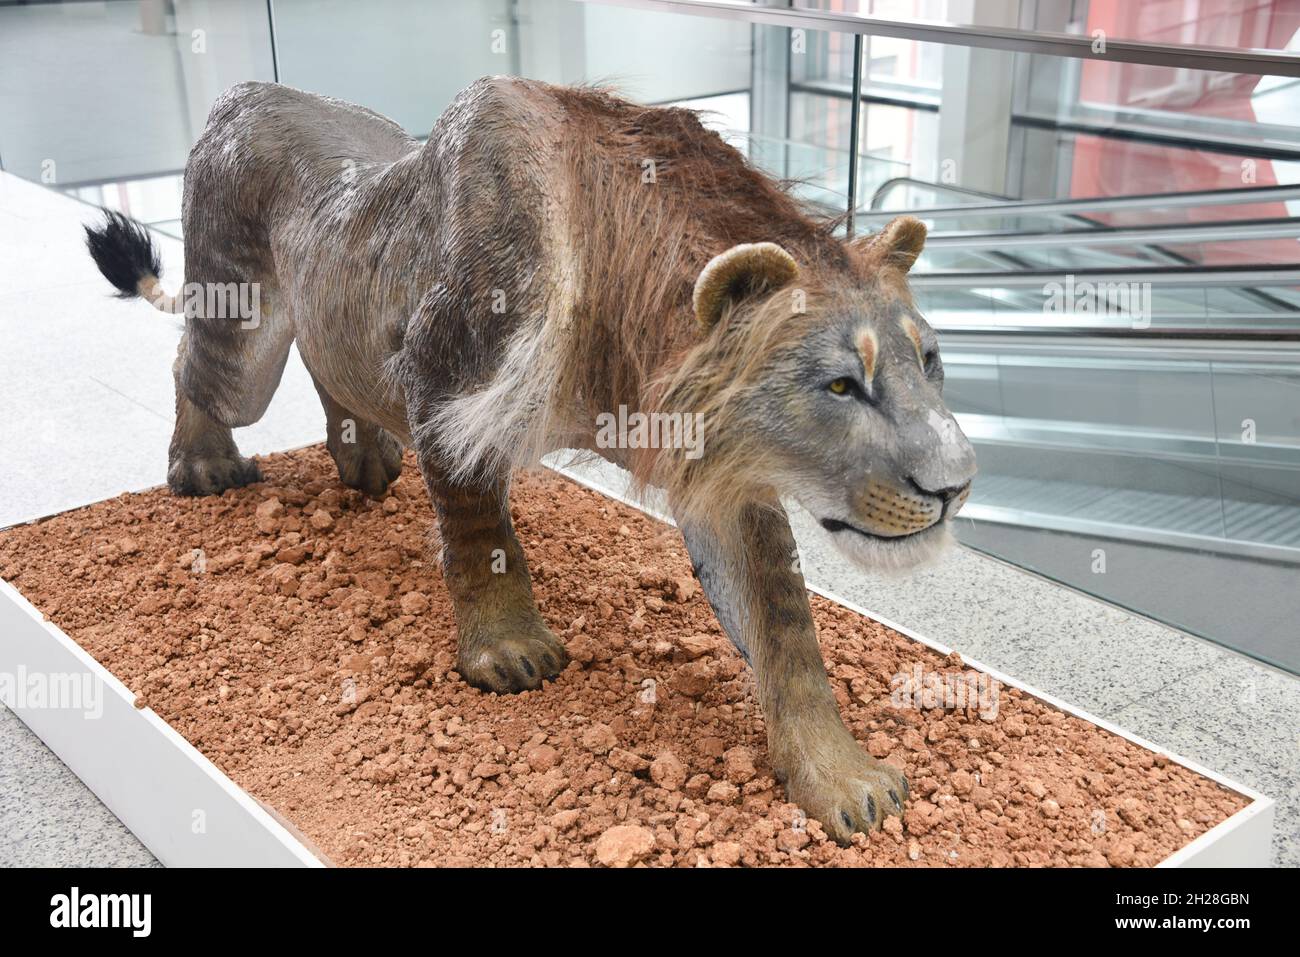 Burgos, Espagne - 16 octobre 2021 : modèle de Lion préhistorique exposé au Musée de l'évolution humaine Banque D'Images